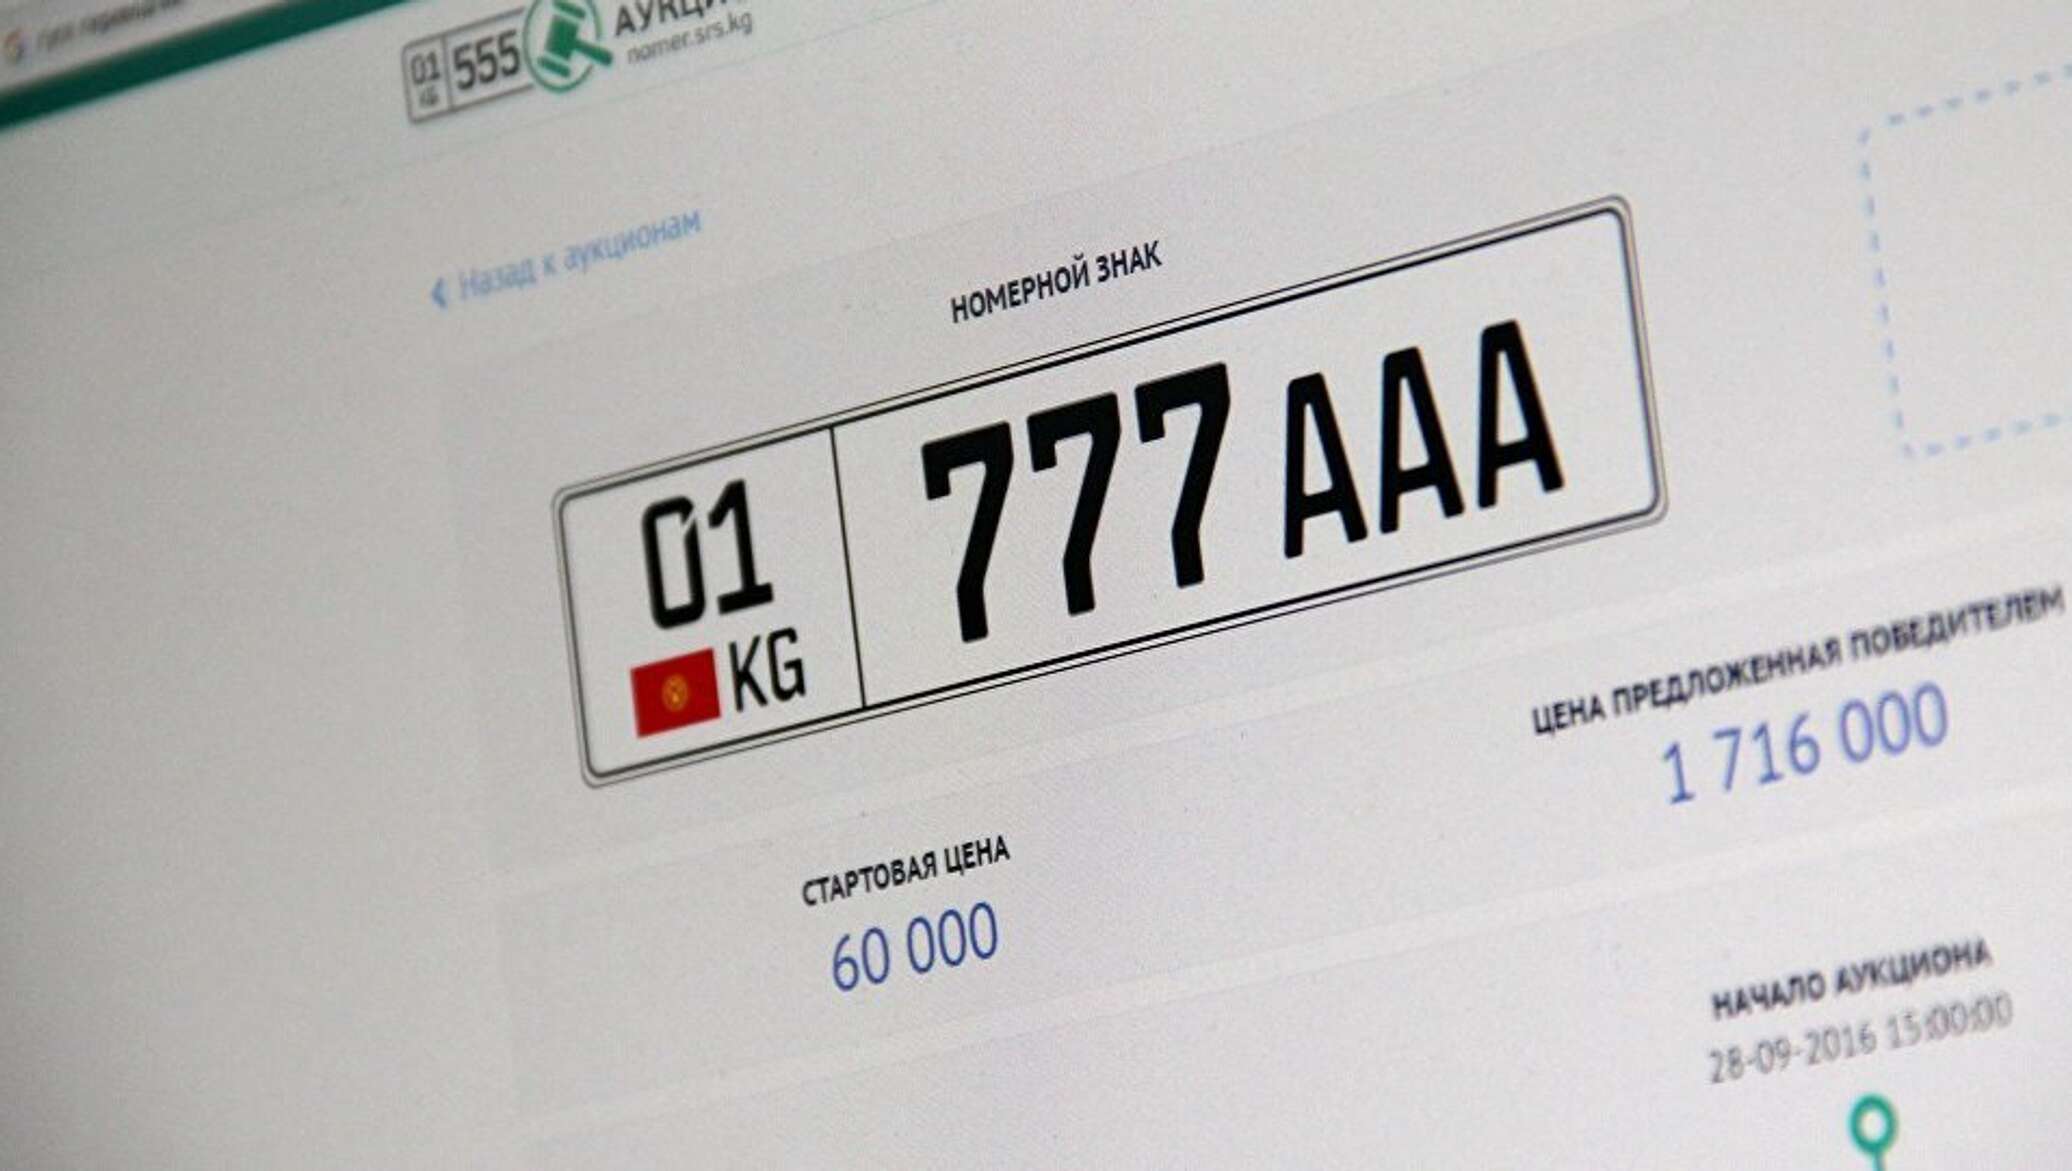 Купить номер ааа. Номерные знаки Кыргызстана. ААА автомобильные номера. Крутые номера Кыргызстана. Кыргызские гос номера.